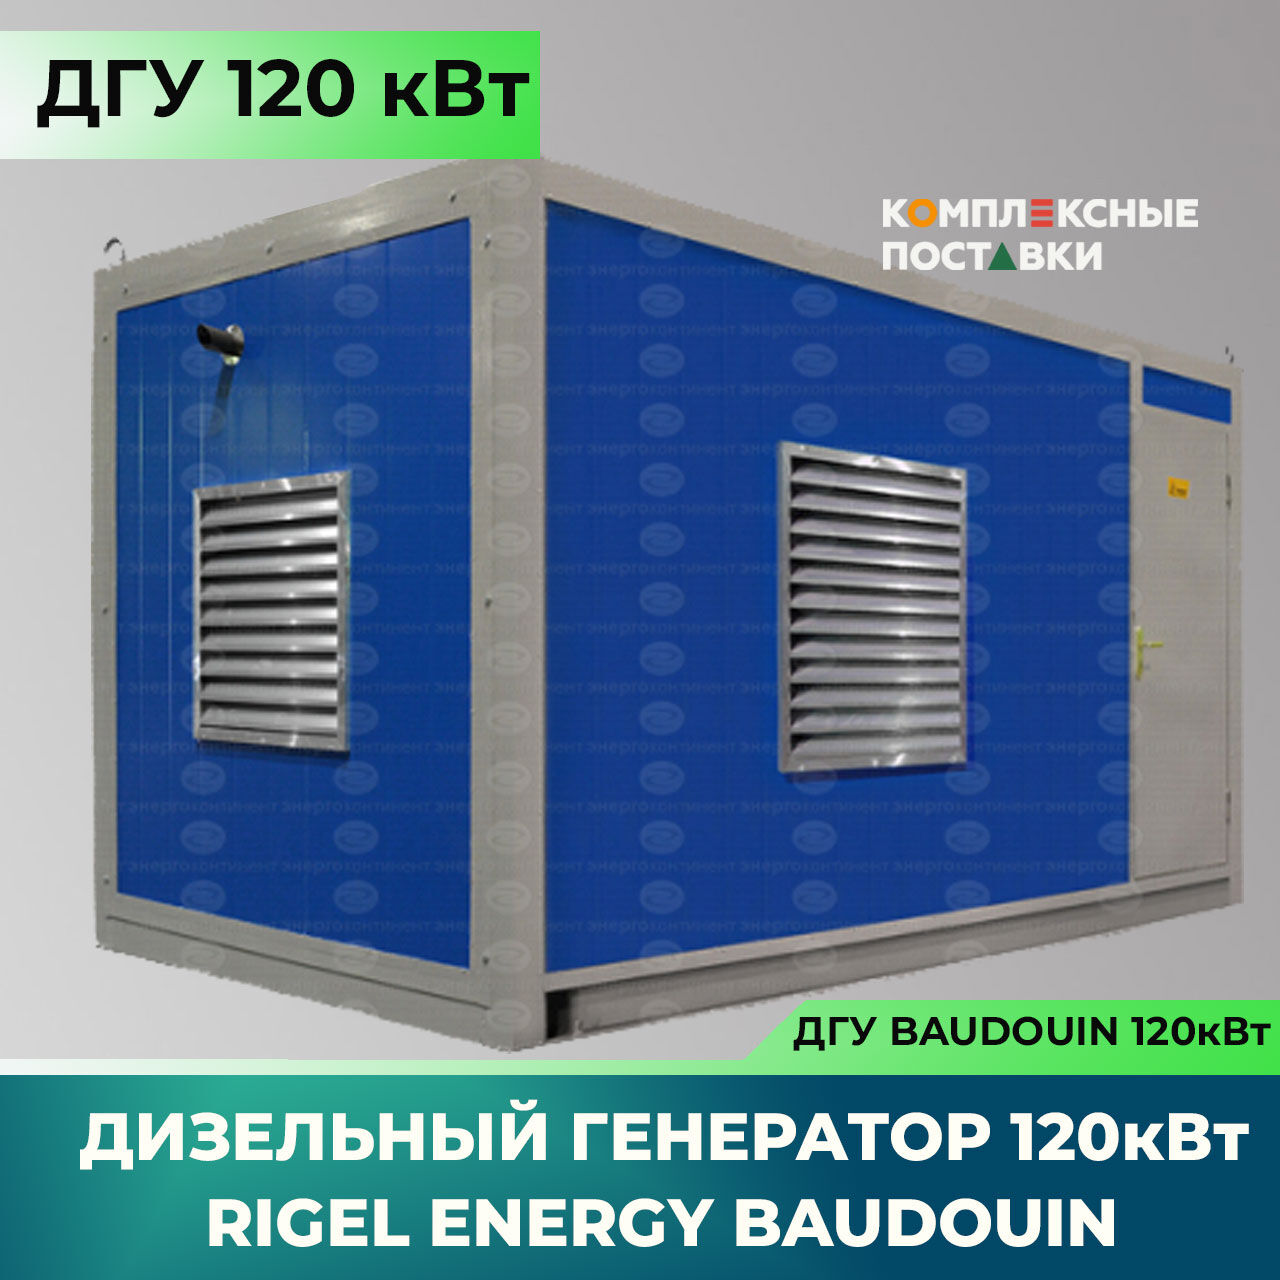 Дизельный генератор Rigel Energy Baudouin REB 120 (120 кВт, Baudouin) 2